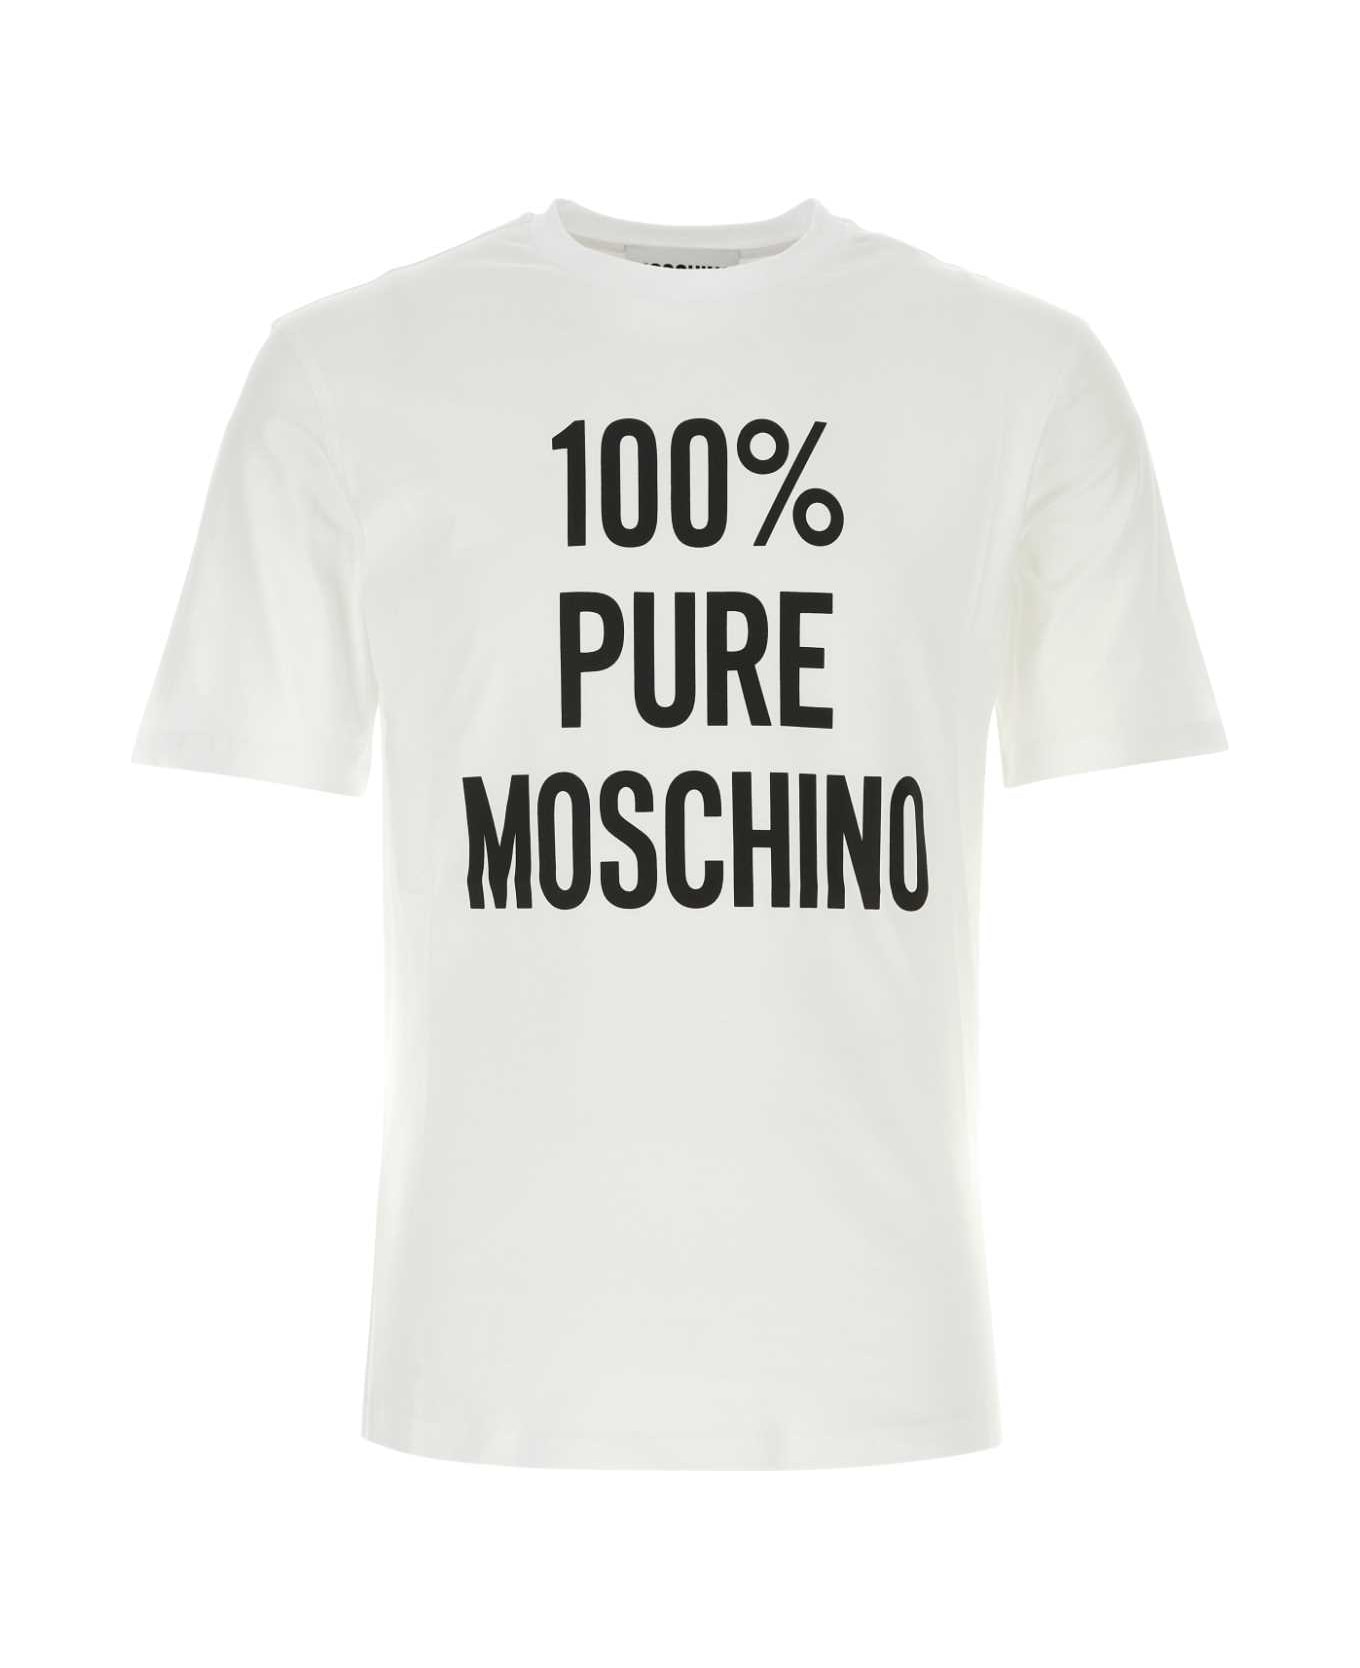 Moschino White Cotton T-shirt - 1001